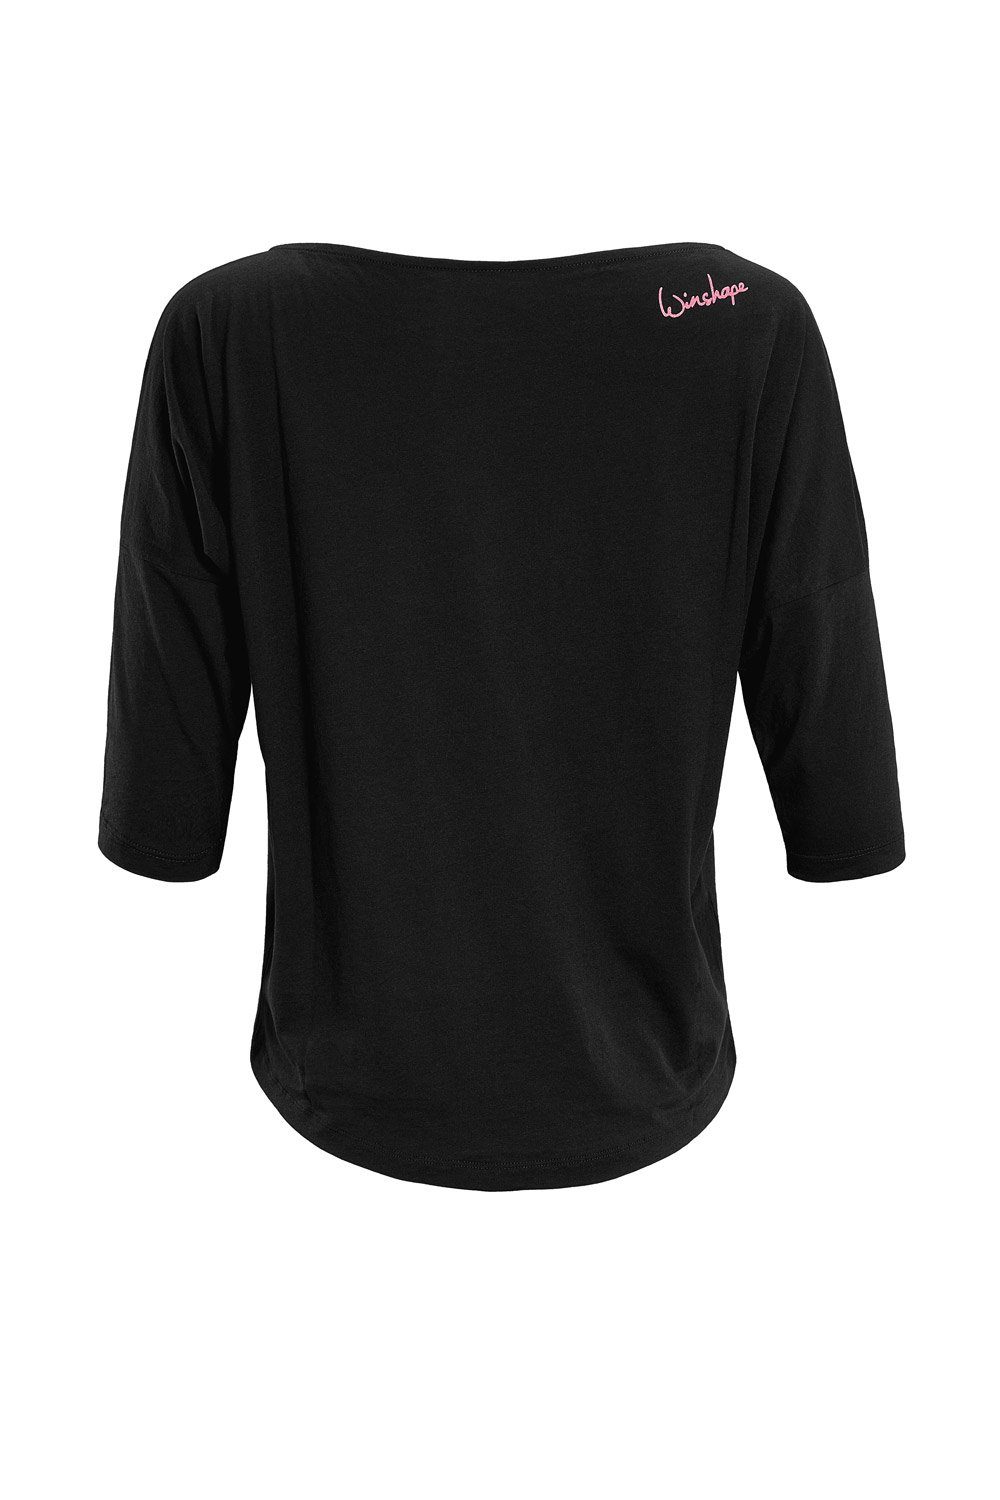 Winshape 3/4-Arm-Shirt MCS001 ultra leicht pinkem Neon mit Glitzer-Aufdruck